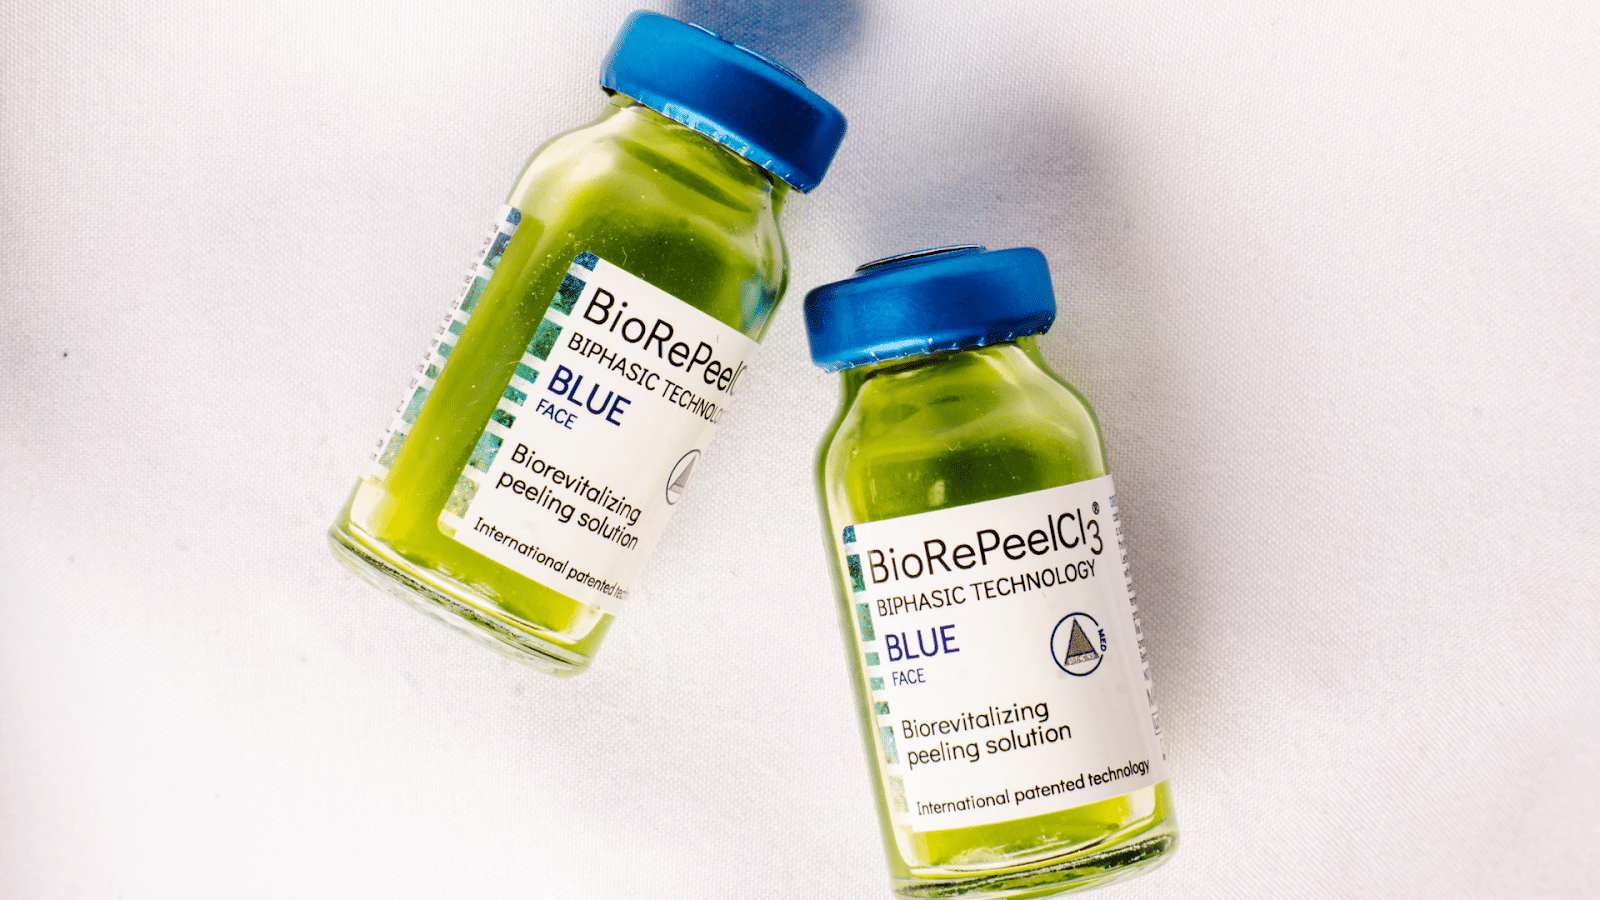 Photo of Biorepeel bottles.